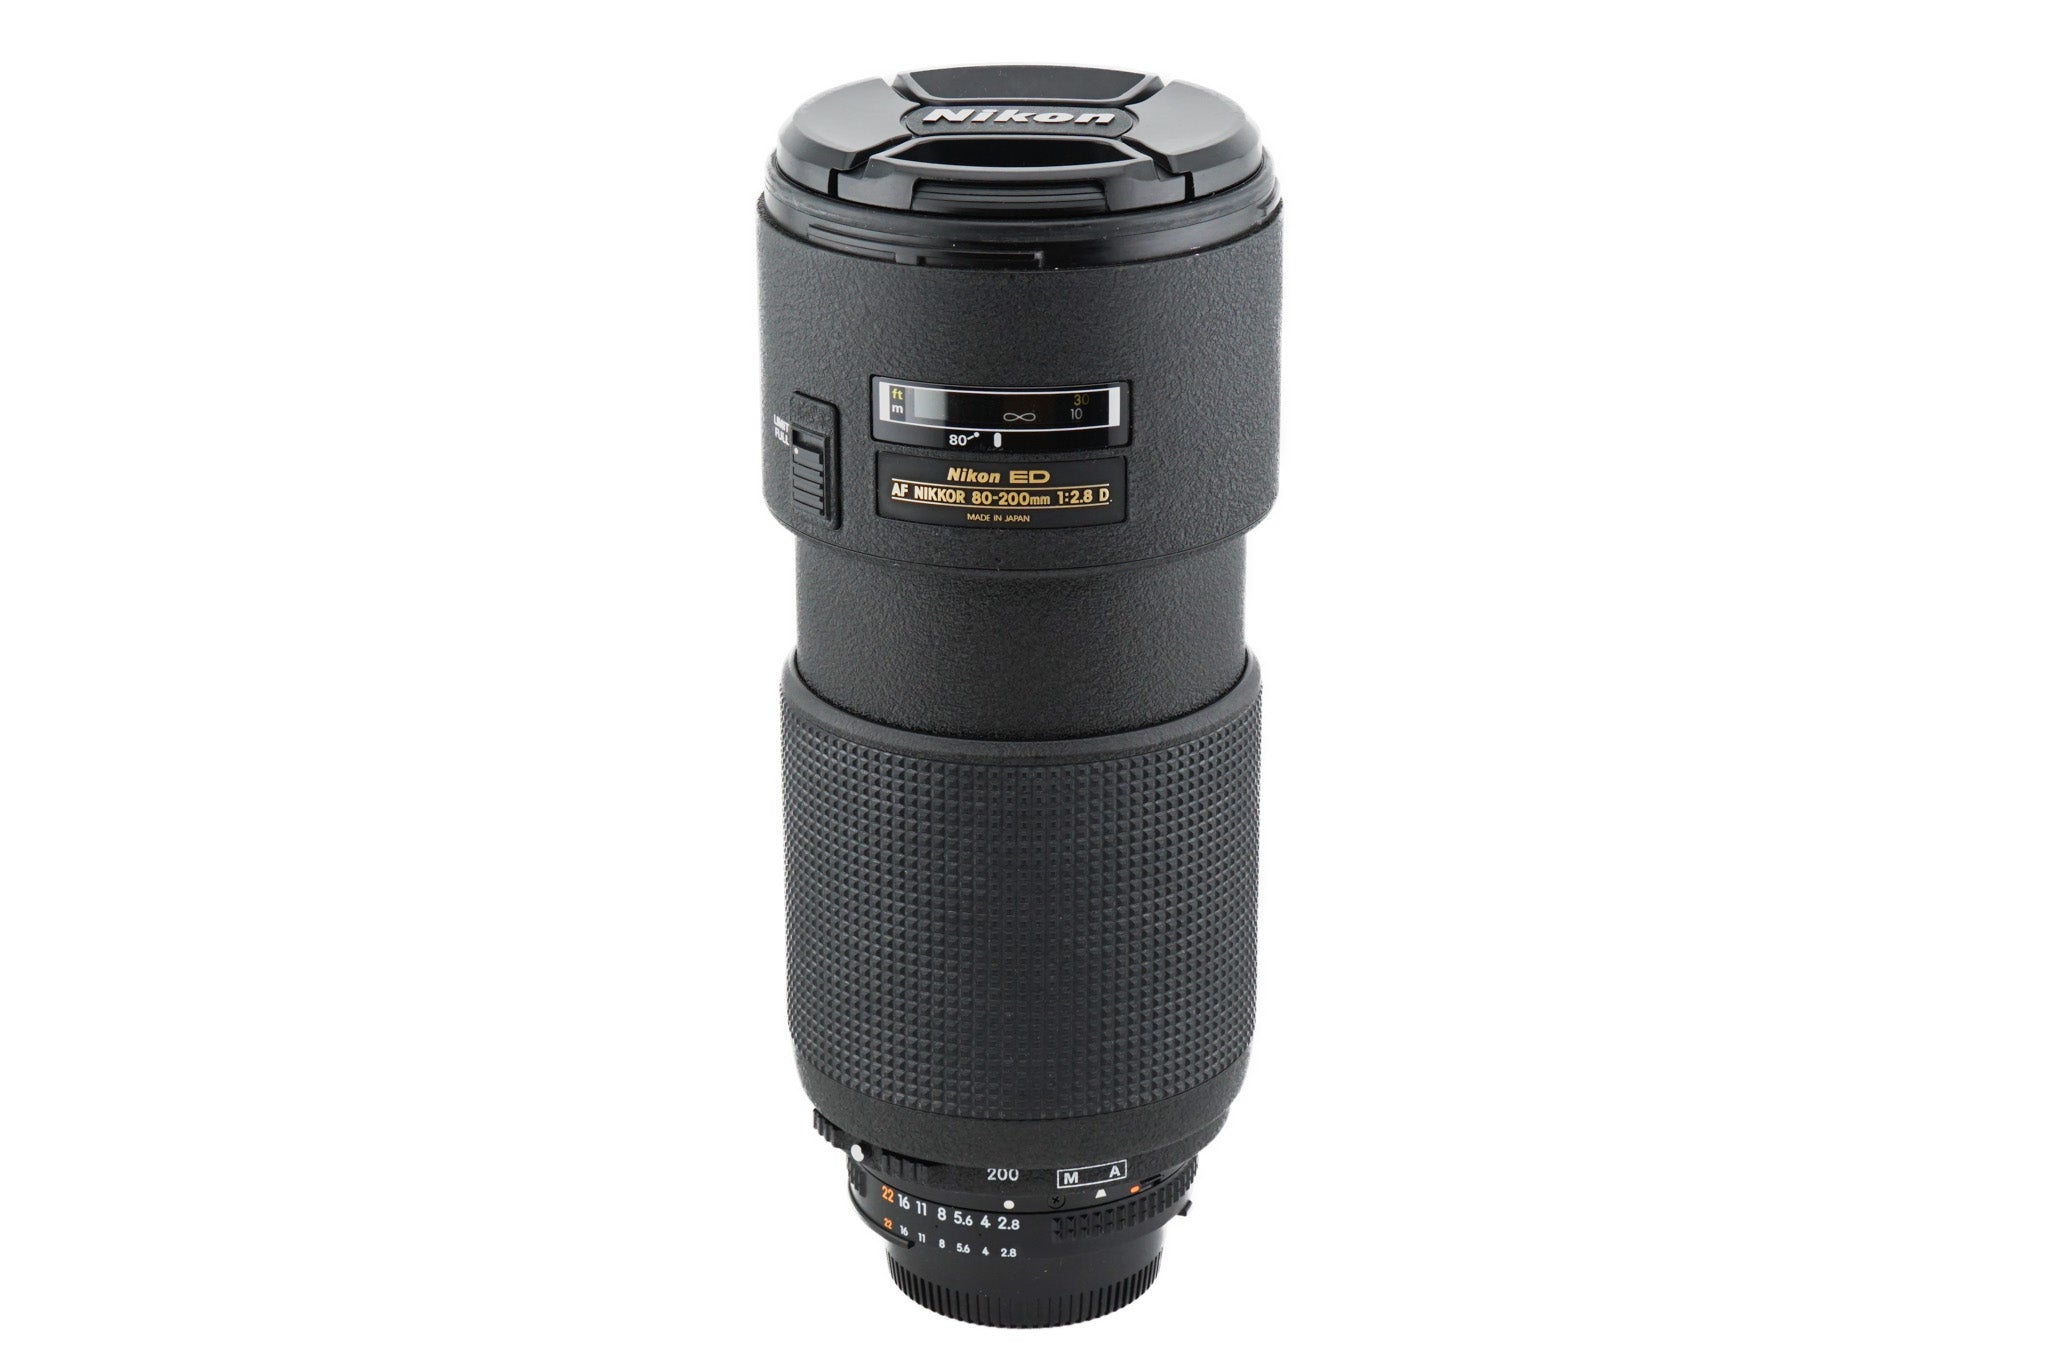 Nikon 80-200mm f2.8 D ED AF Nikkor